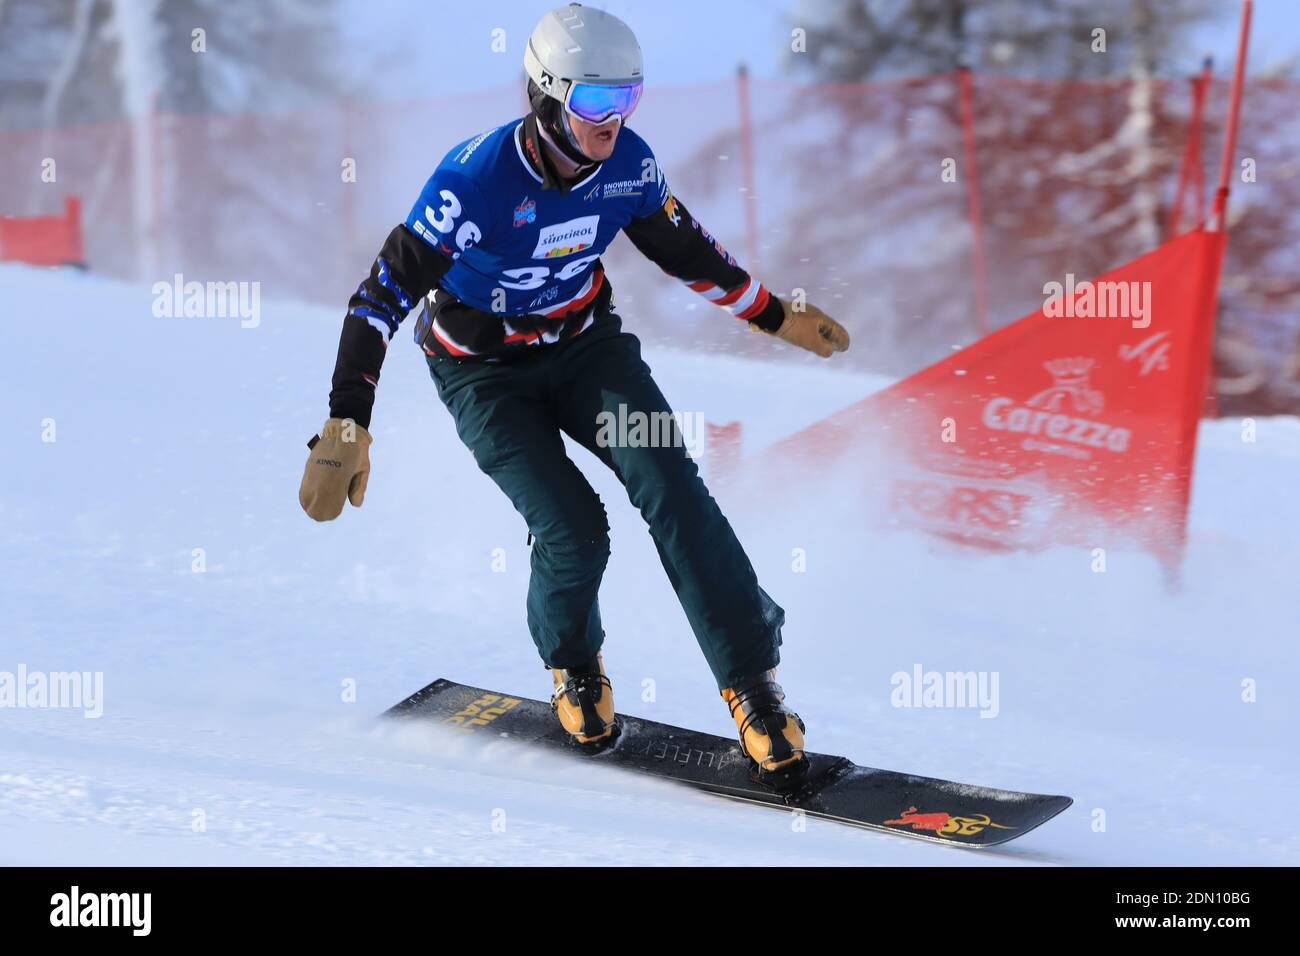 Carezza, Italie. 17 décembre 2020. Coupe du monde de snowboard FIS -  Covid-19 Outbreak Parallel Slalom événement le 17/12/2020 à Carezza,  Italie. En action Gabriel messner (ITA) saute (photo de Pierre  Teyssot/ESPA-Images)